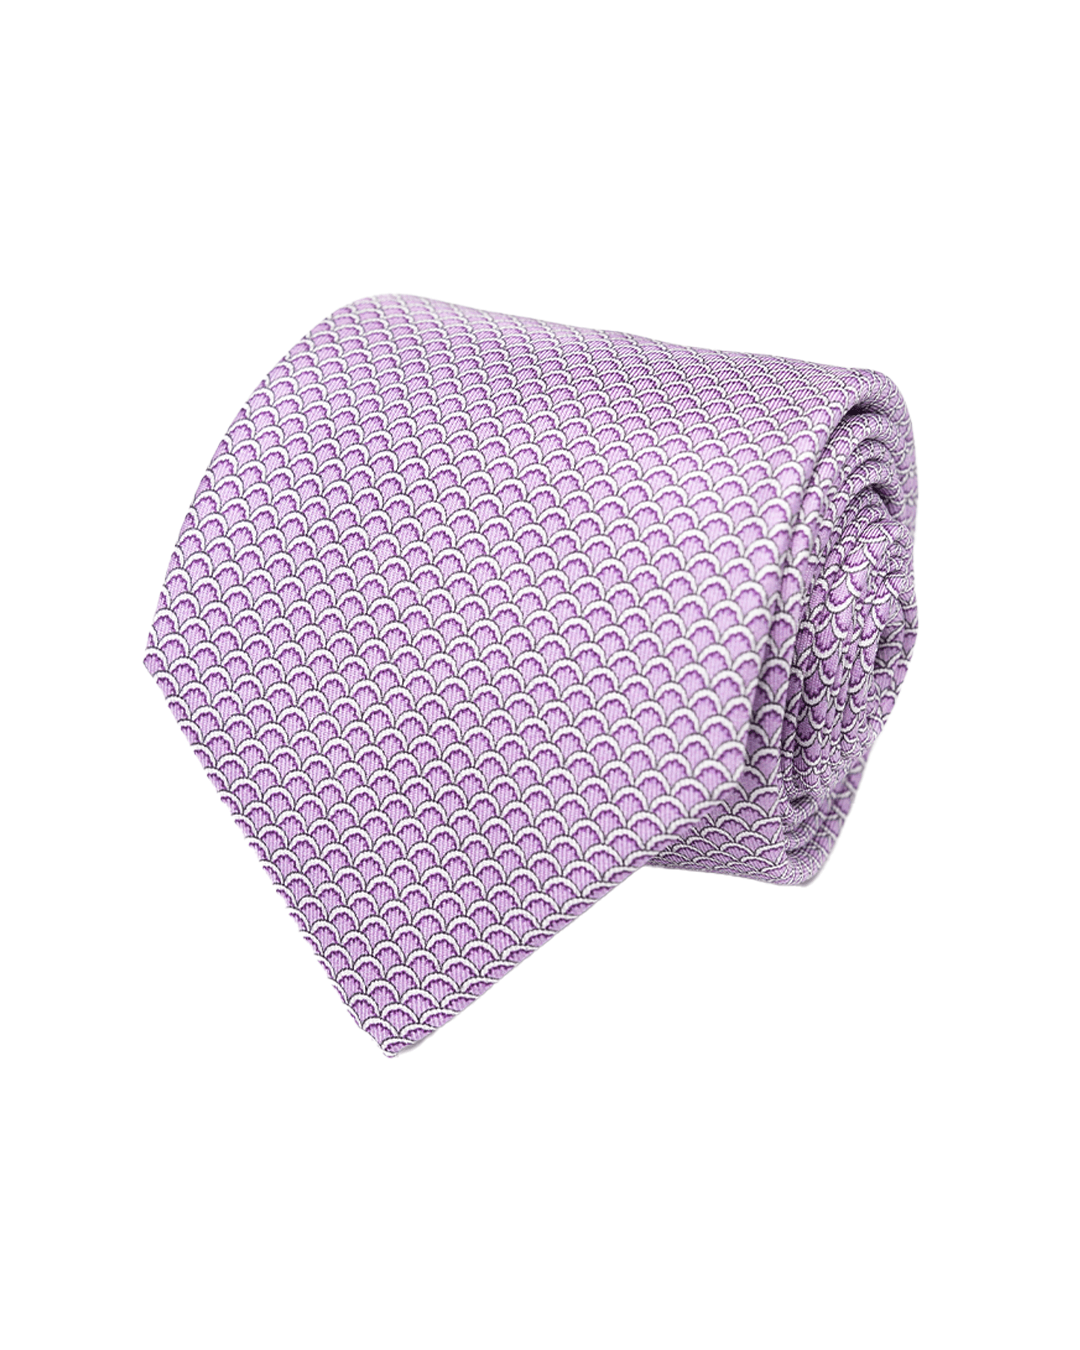 Gagliardi Ties One Size Gagliardi Pink Sea Shell Italian Silk Printed Tie